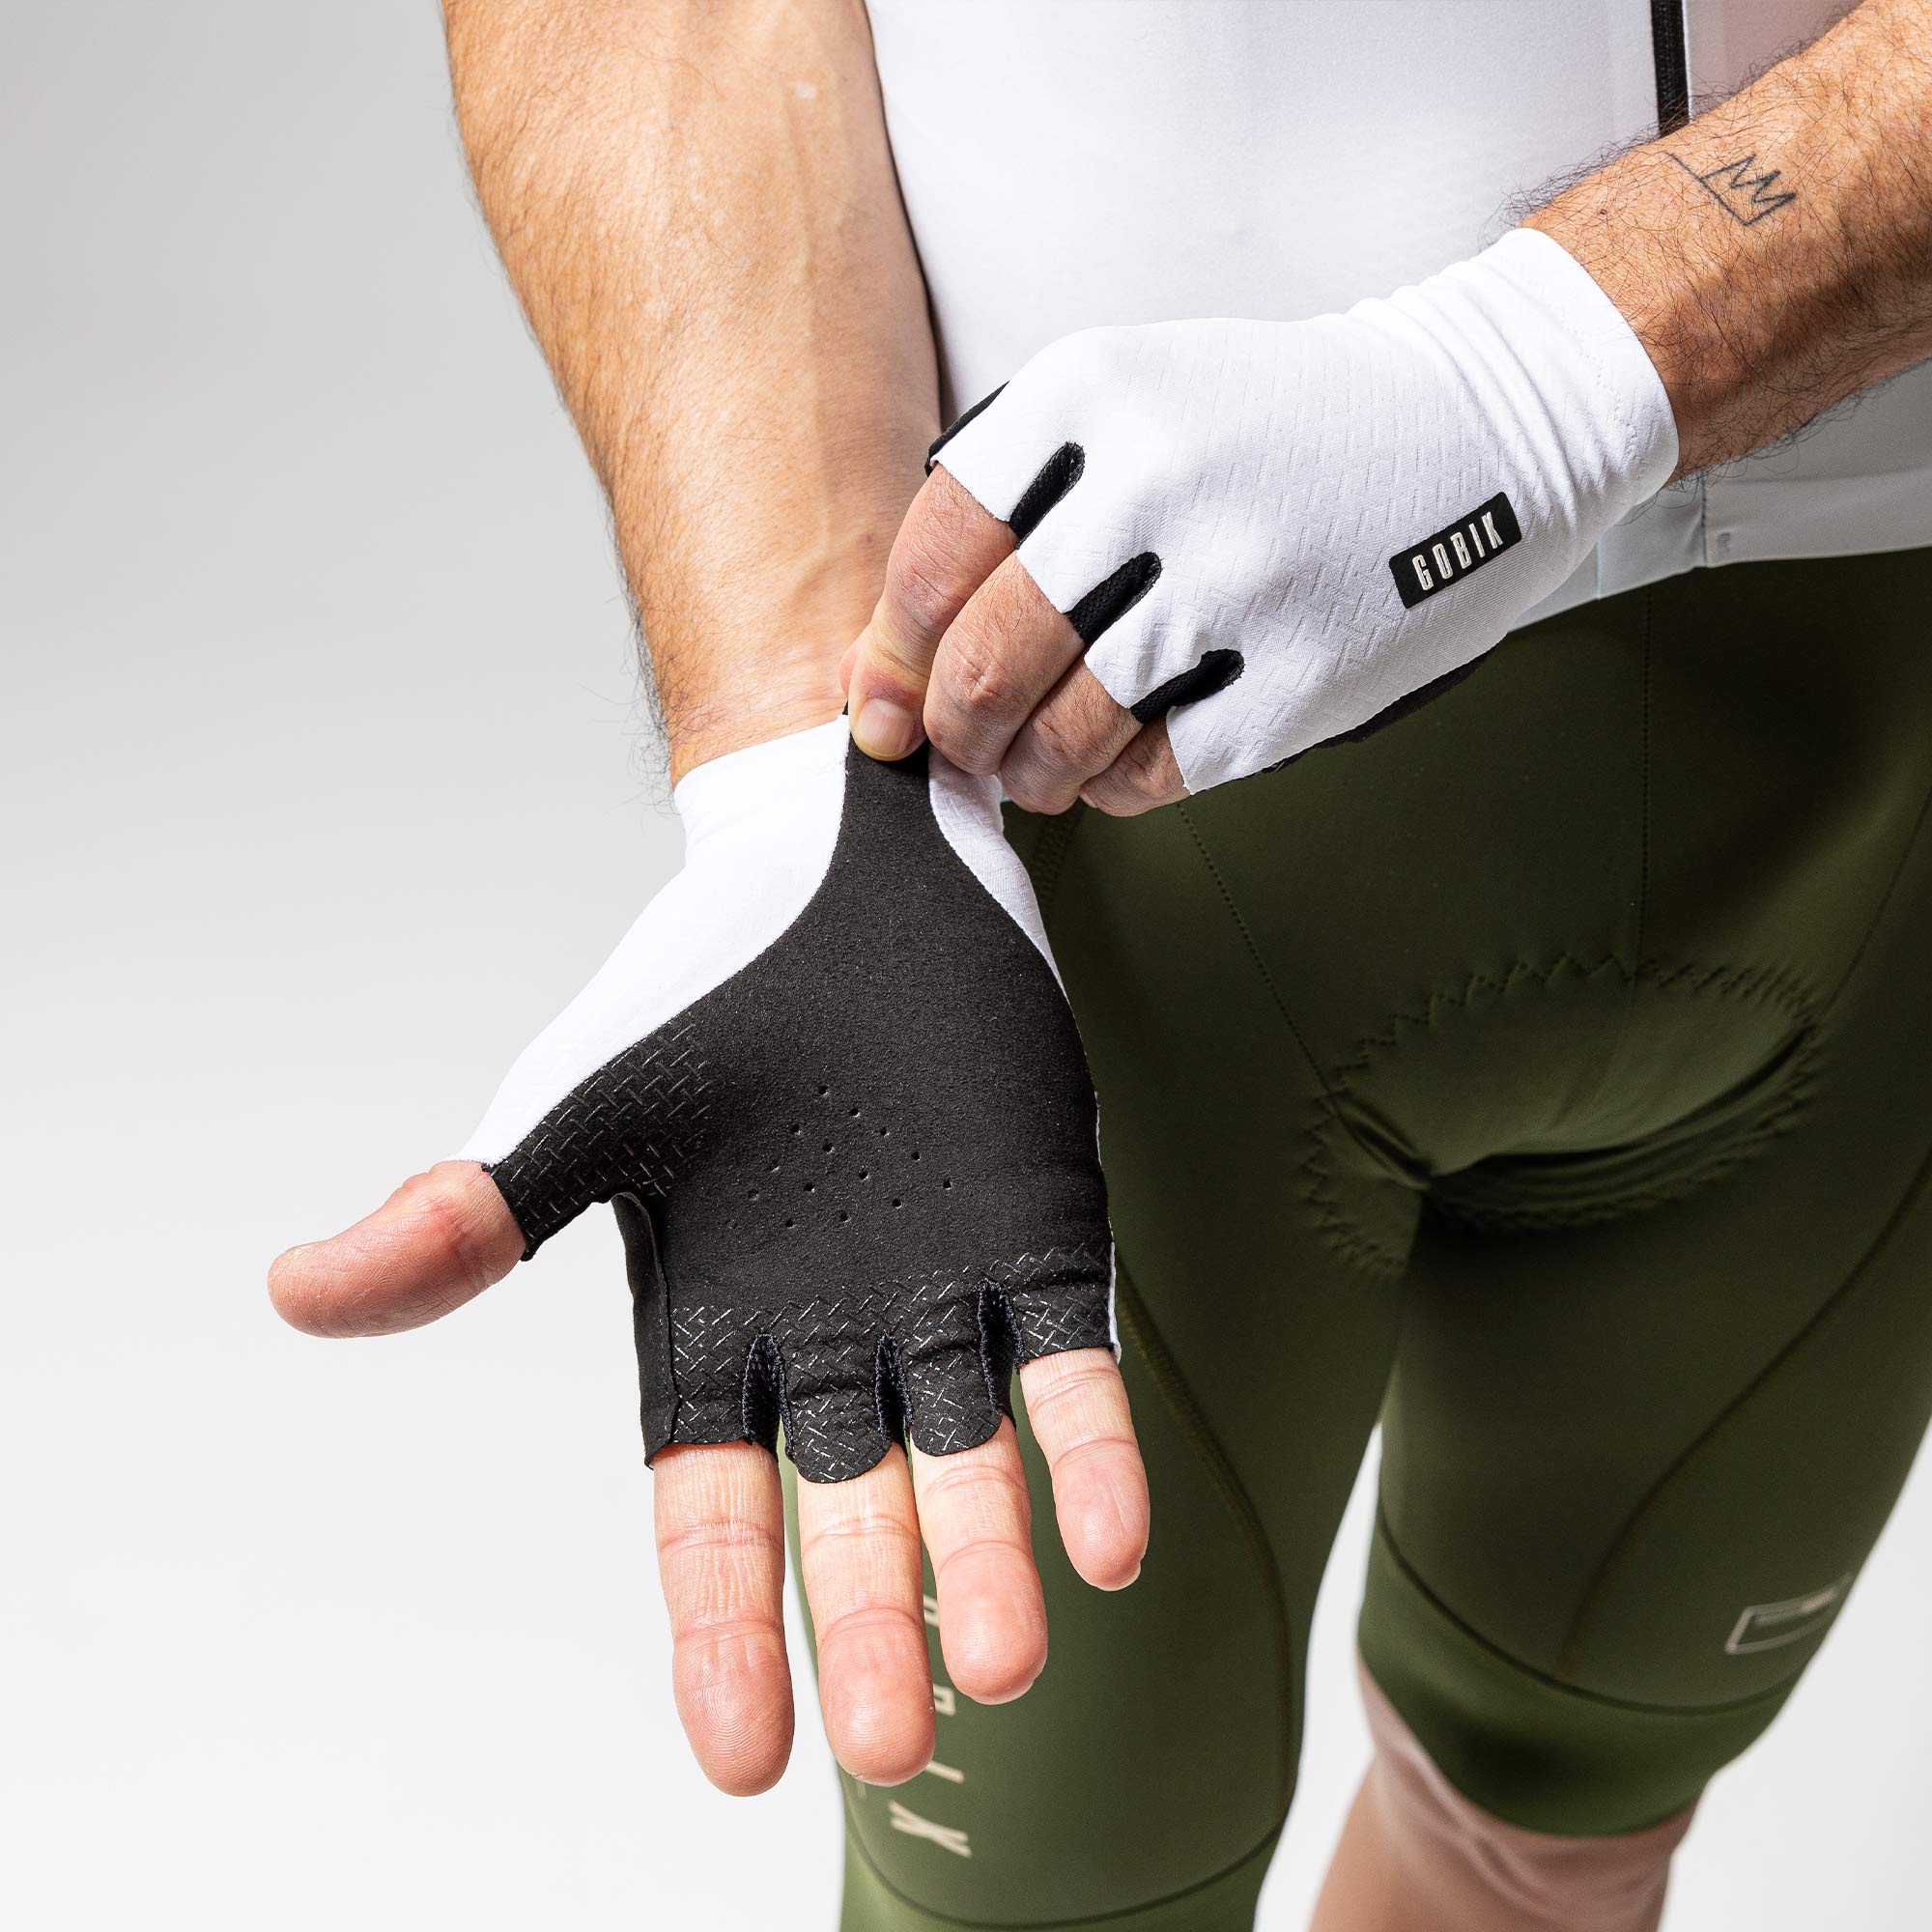 Gobik Primaloft Zero Black unisex guantes térmicos - Envío 24h